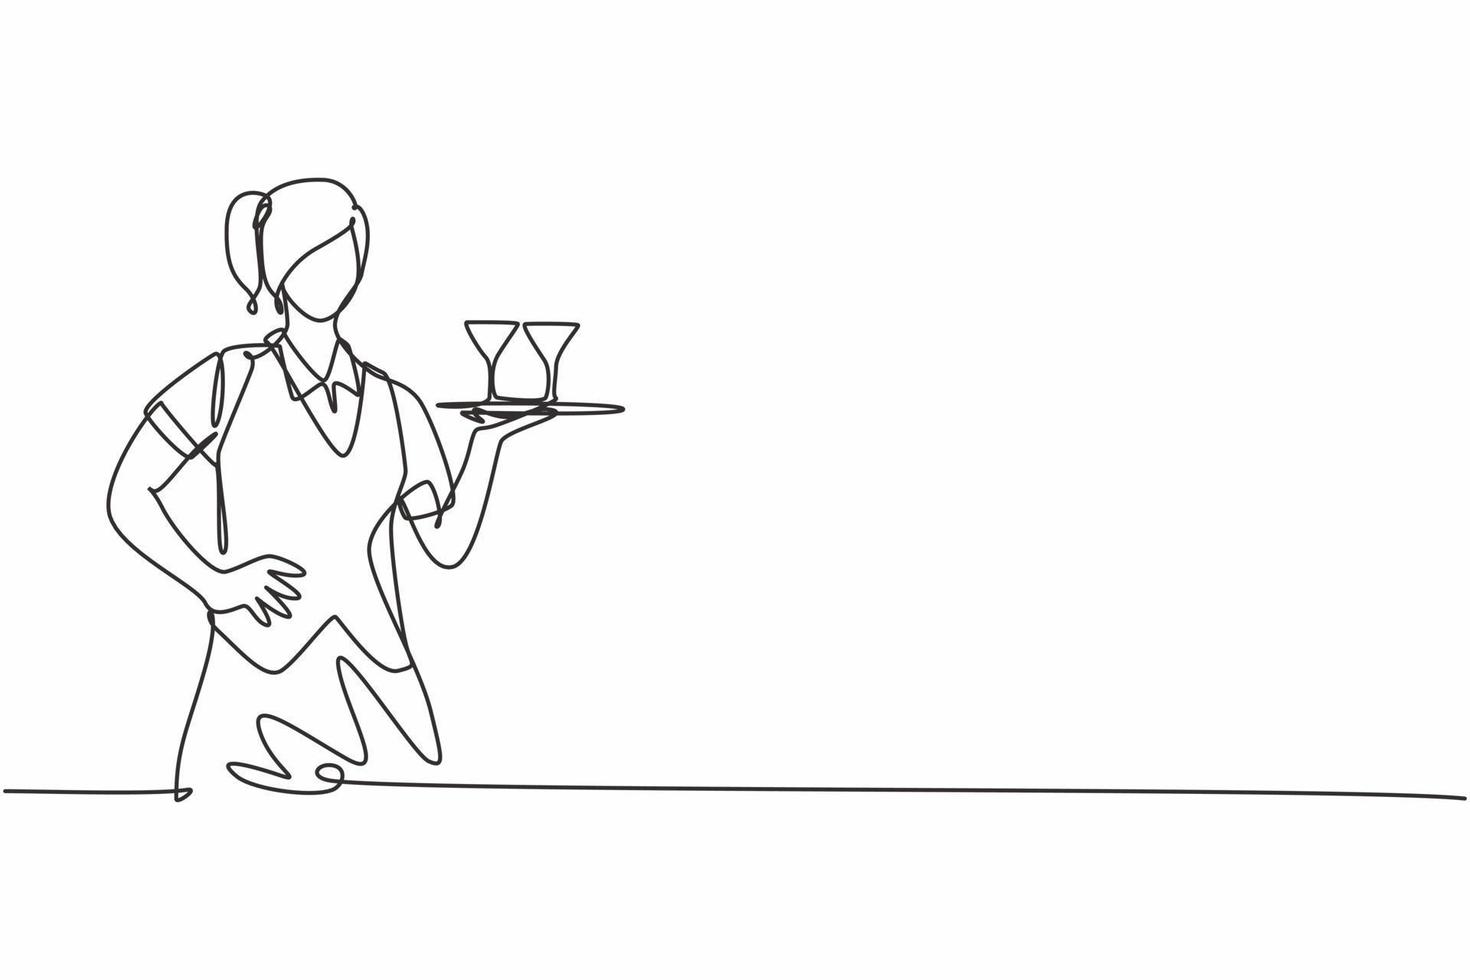 dibujo continuo de una línea de camarera joven que trae el vaso en la bandeja con las manos en la cadera. concepto minimalista de profesión de trabajo profesional. Ilustración gráfica de vector de diseño de dibujo de una sola línea